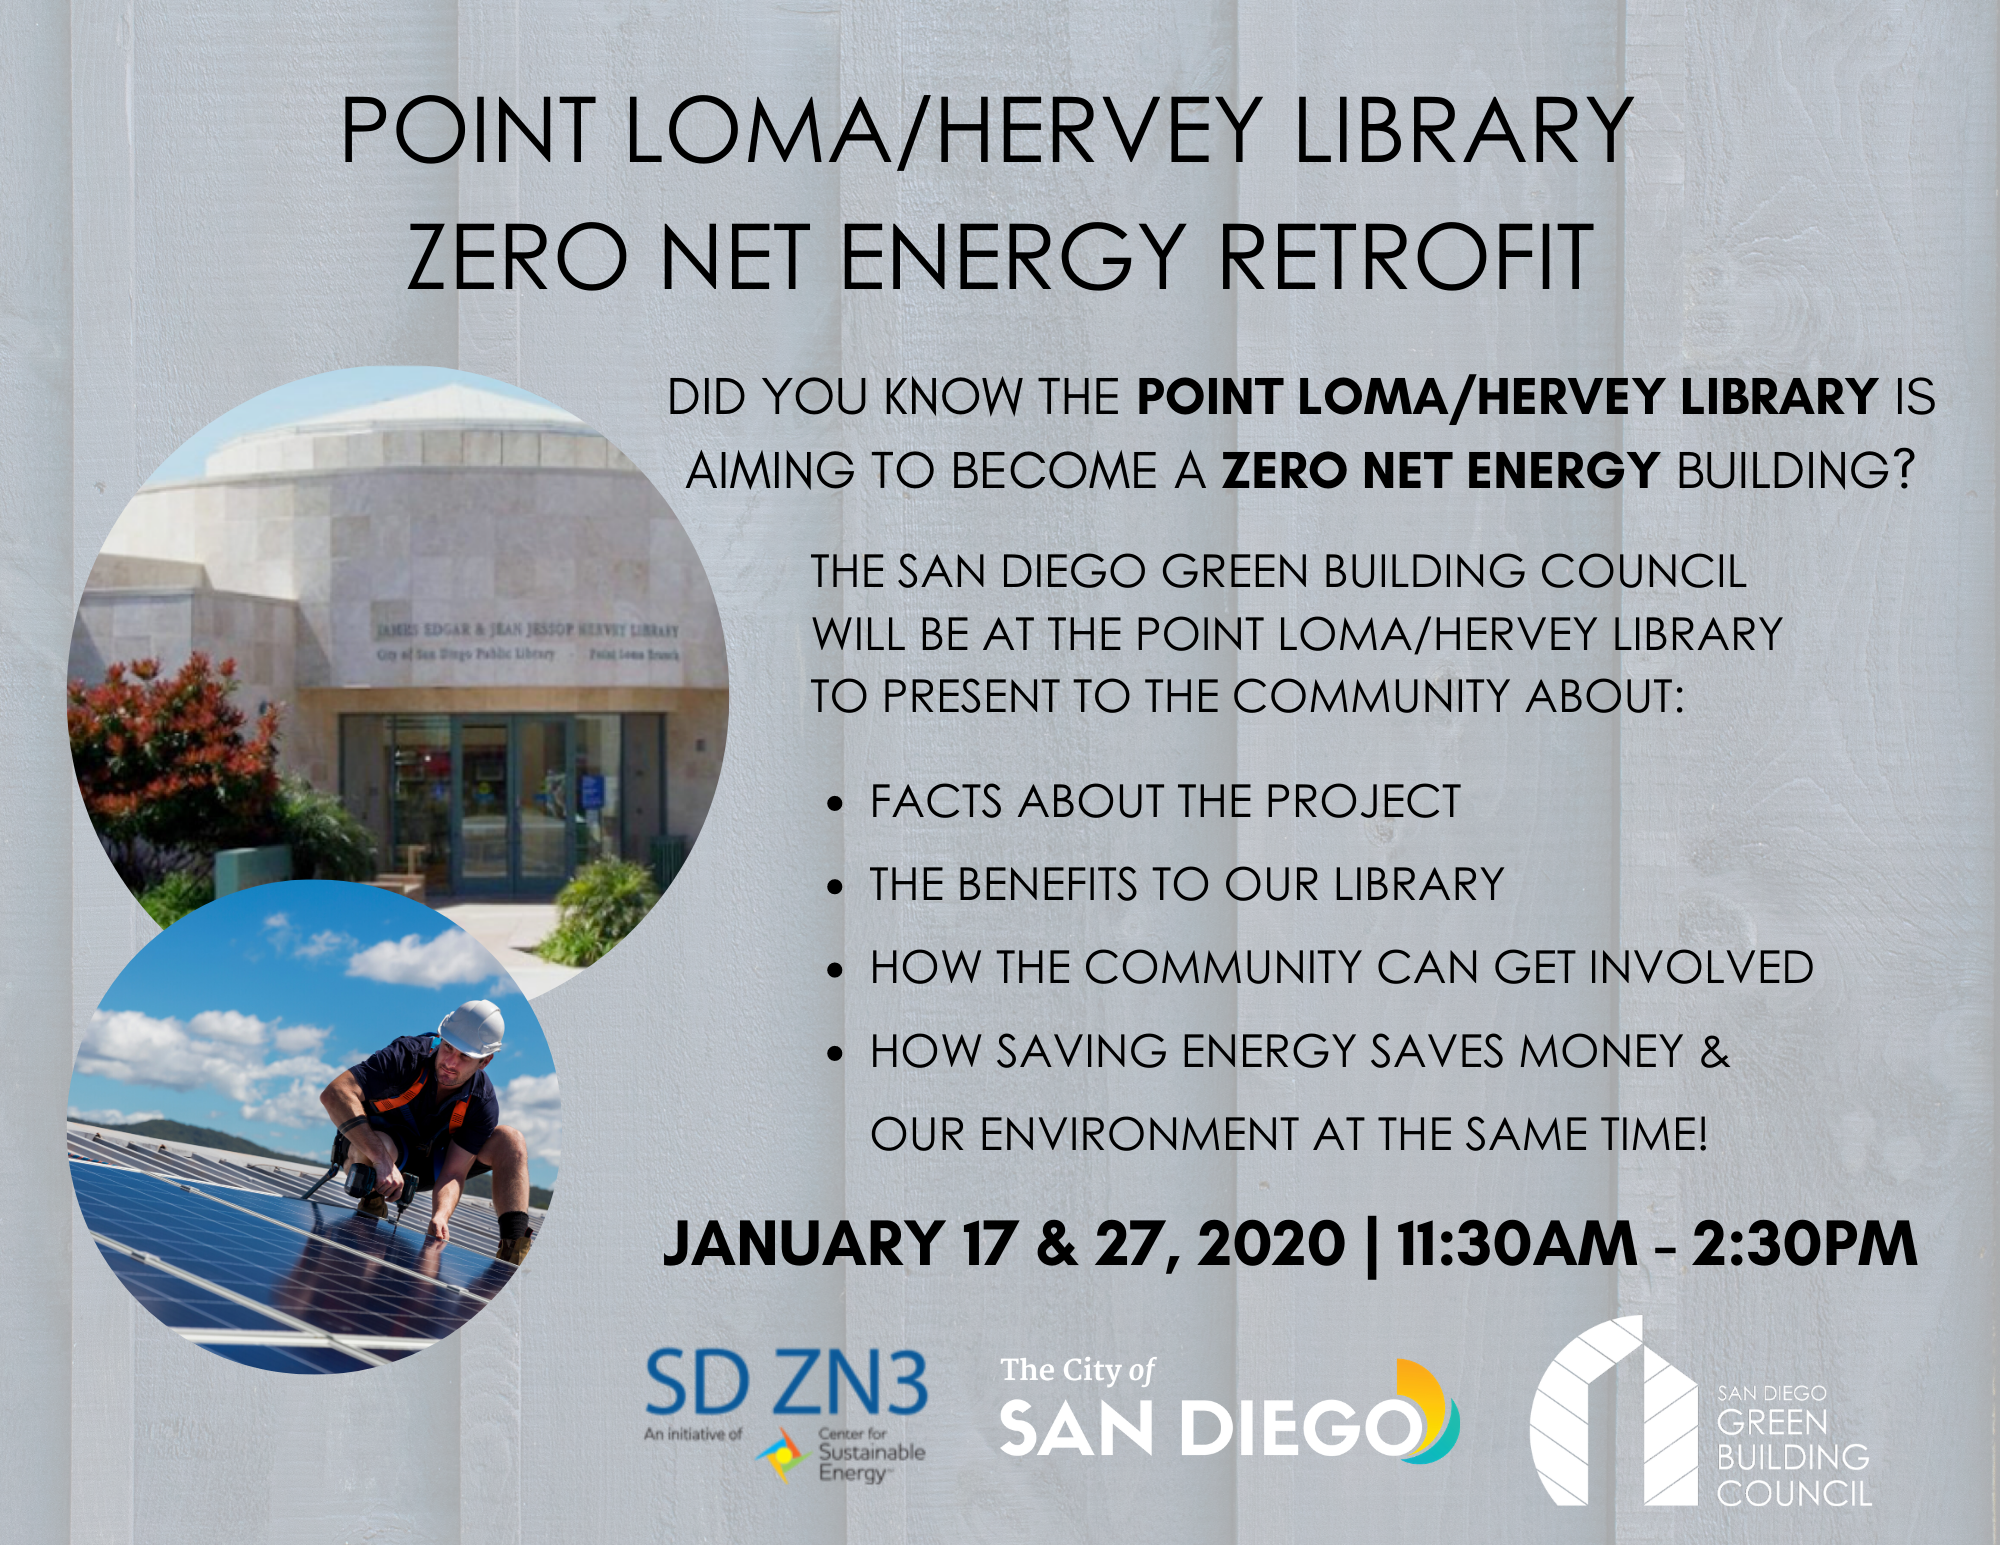 Point Loma/Hervey Library Zero Net Energy Retrofit flyer